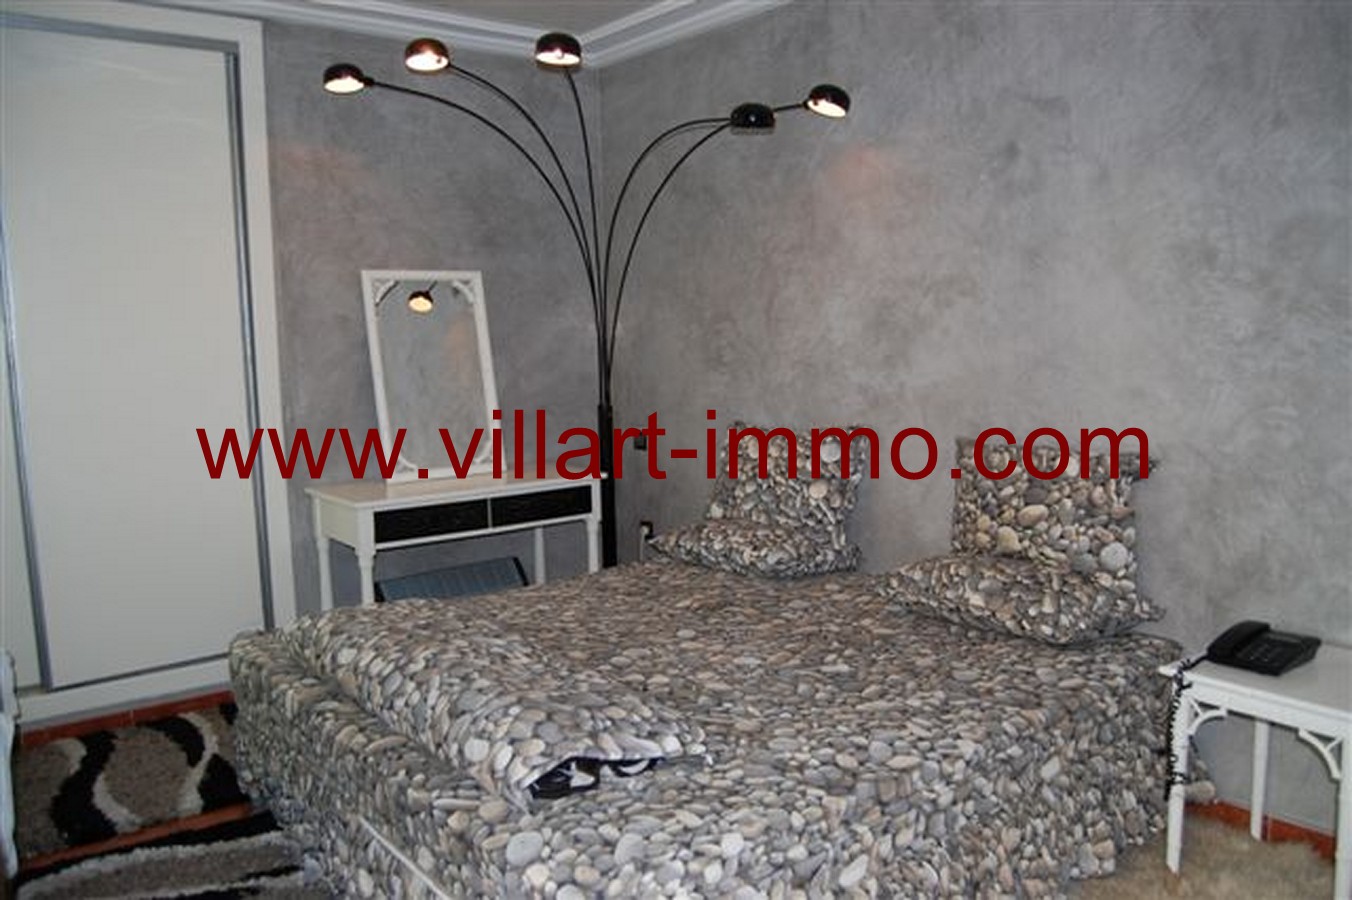 3- Vente -Appartement-Tanger-Maroc–Anejma-Chambre 1-VA26-Villartimmo